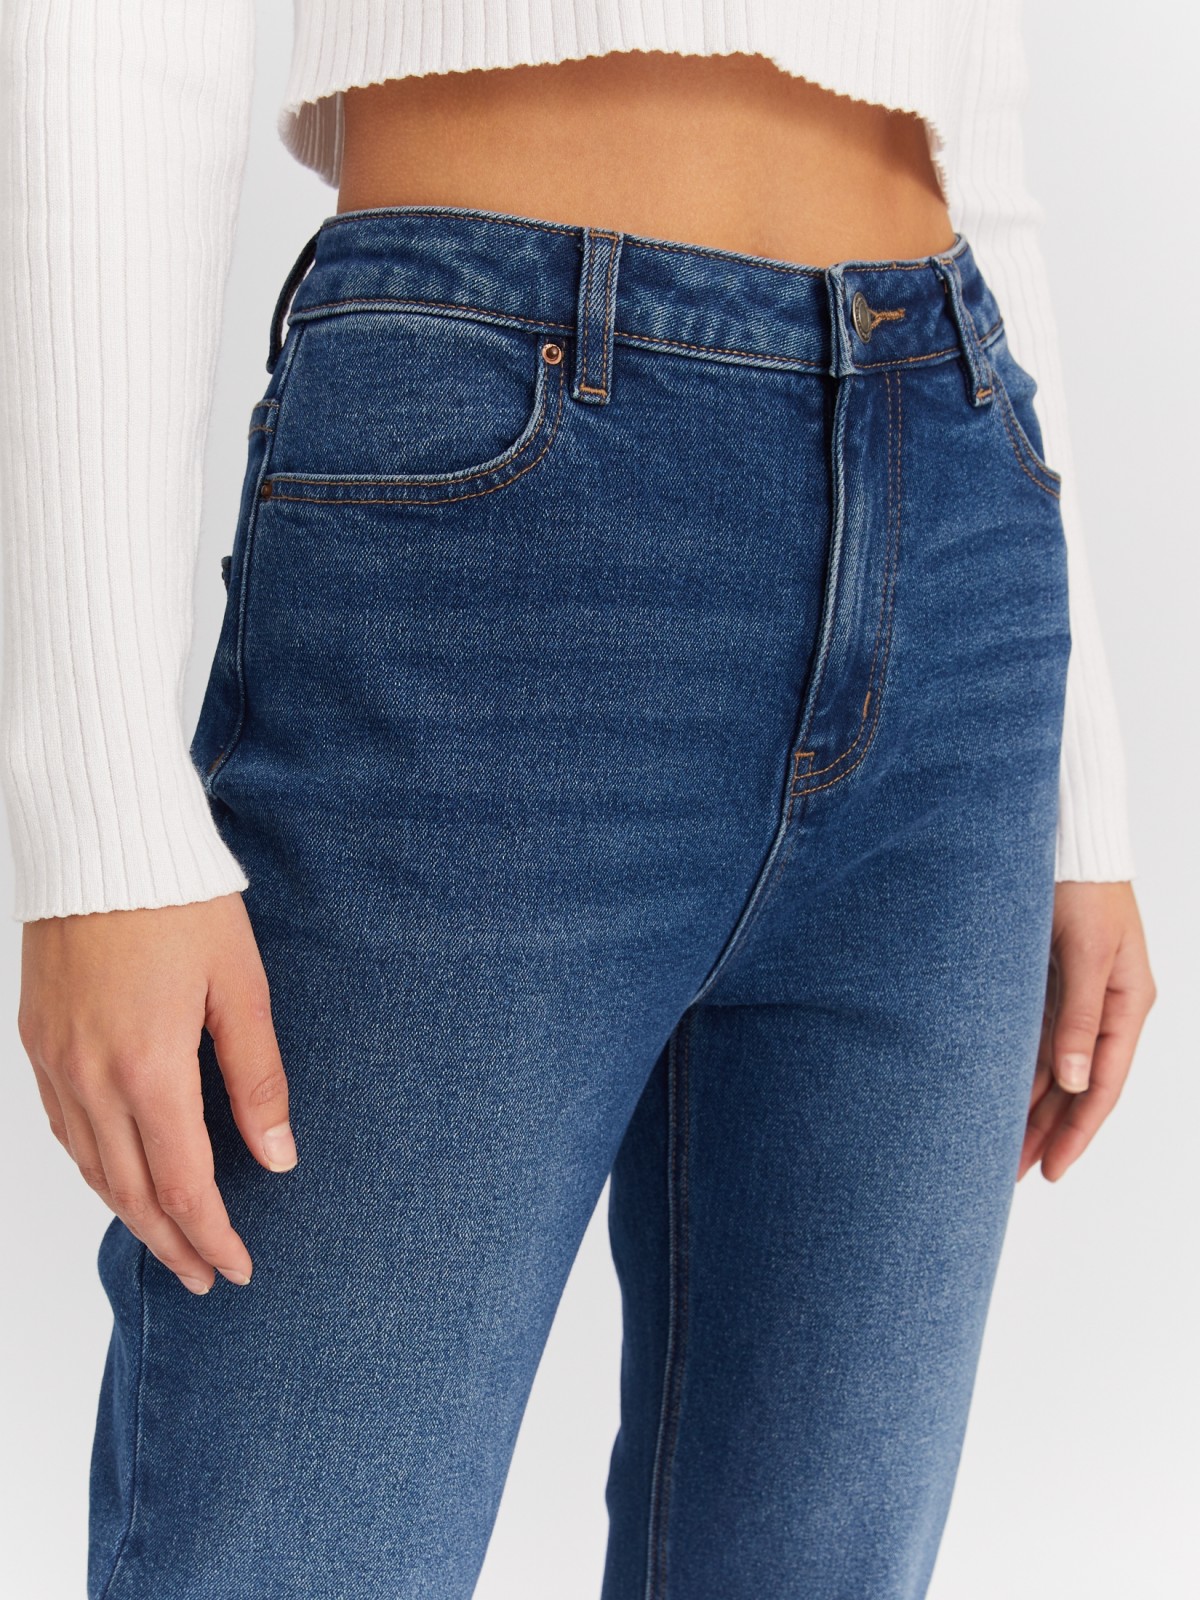 Утеплённые джинсы силуэта Mom Comfort с высокой посадкой